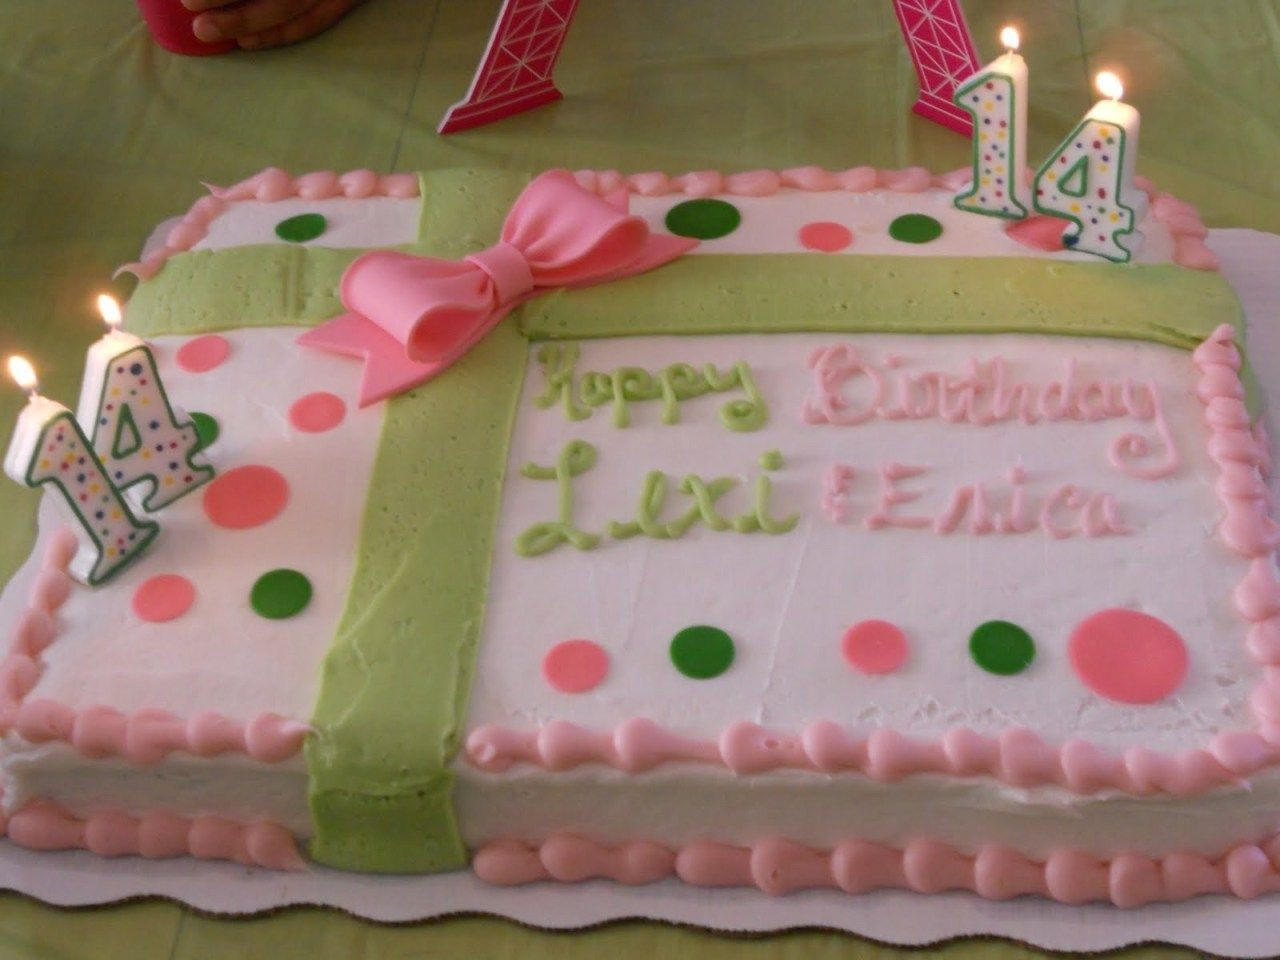 Sams Club Birthday Cake Designs
 Sam s Club Bakery Birthday Cakes Seemly Also Sams Club